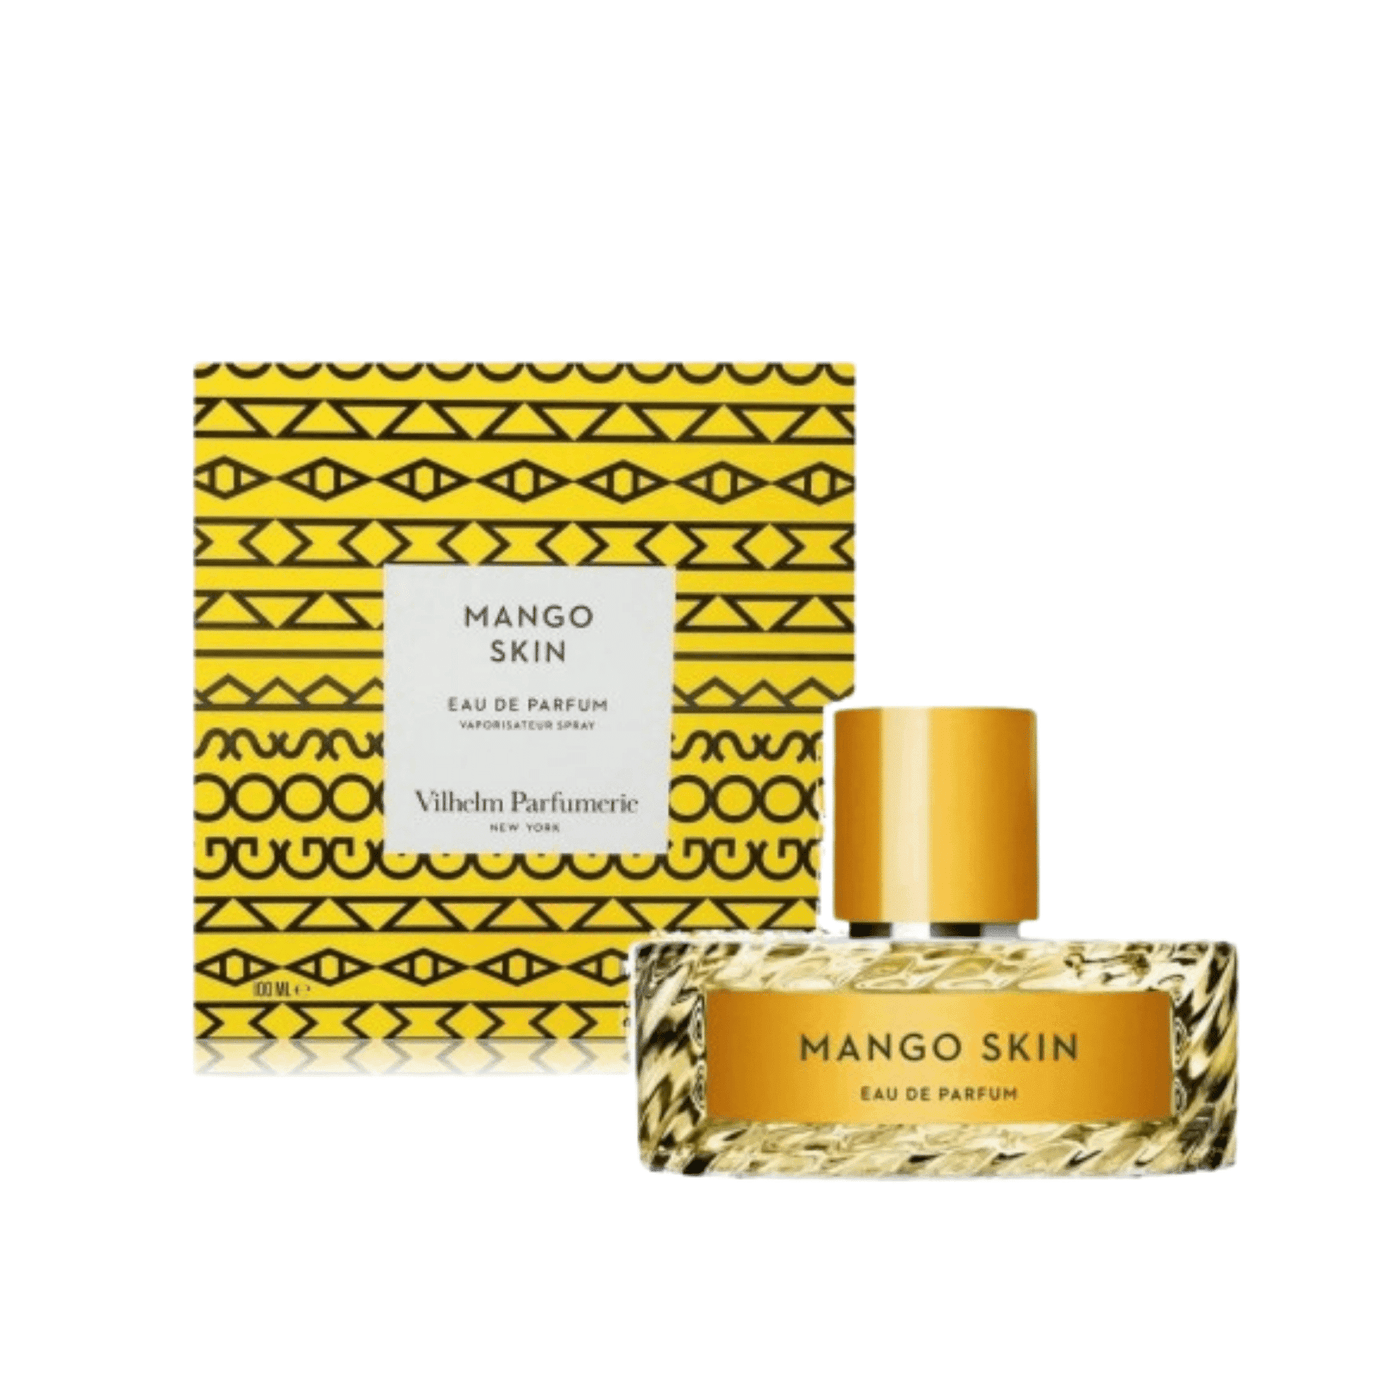 Mango Skin By Vilhelm Parfumerie 100ml Retail Pack